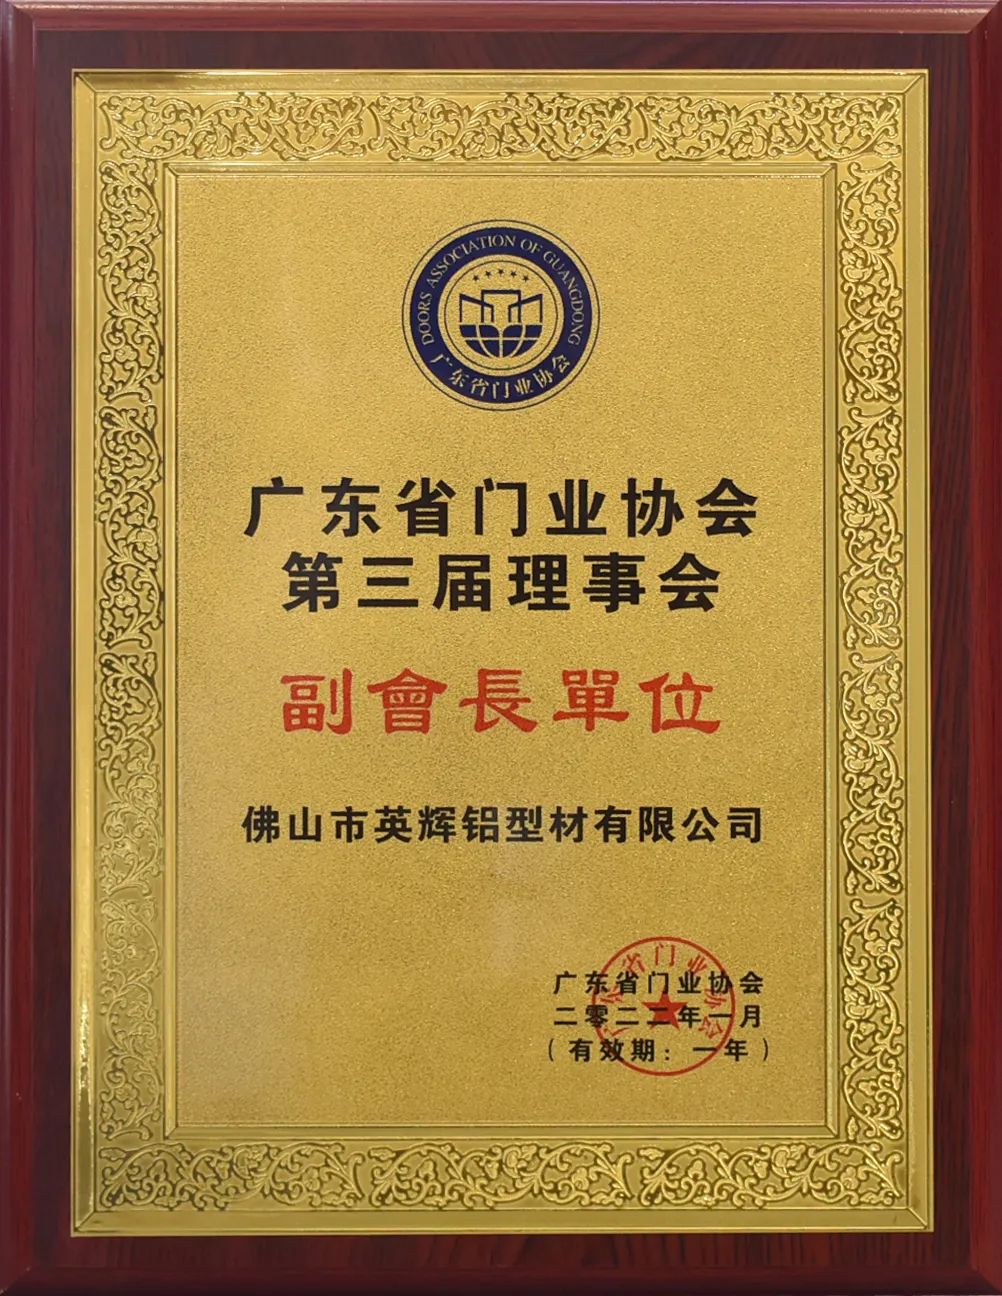 英輝鋁業榮獲廣東省門業協會“金牌供應商”稱號